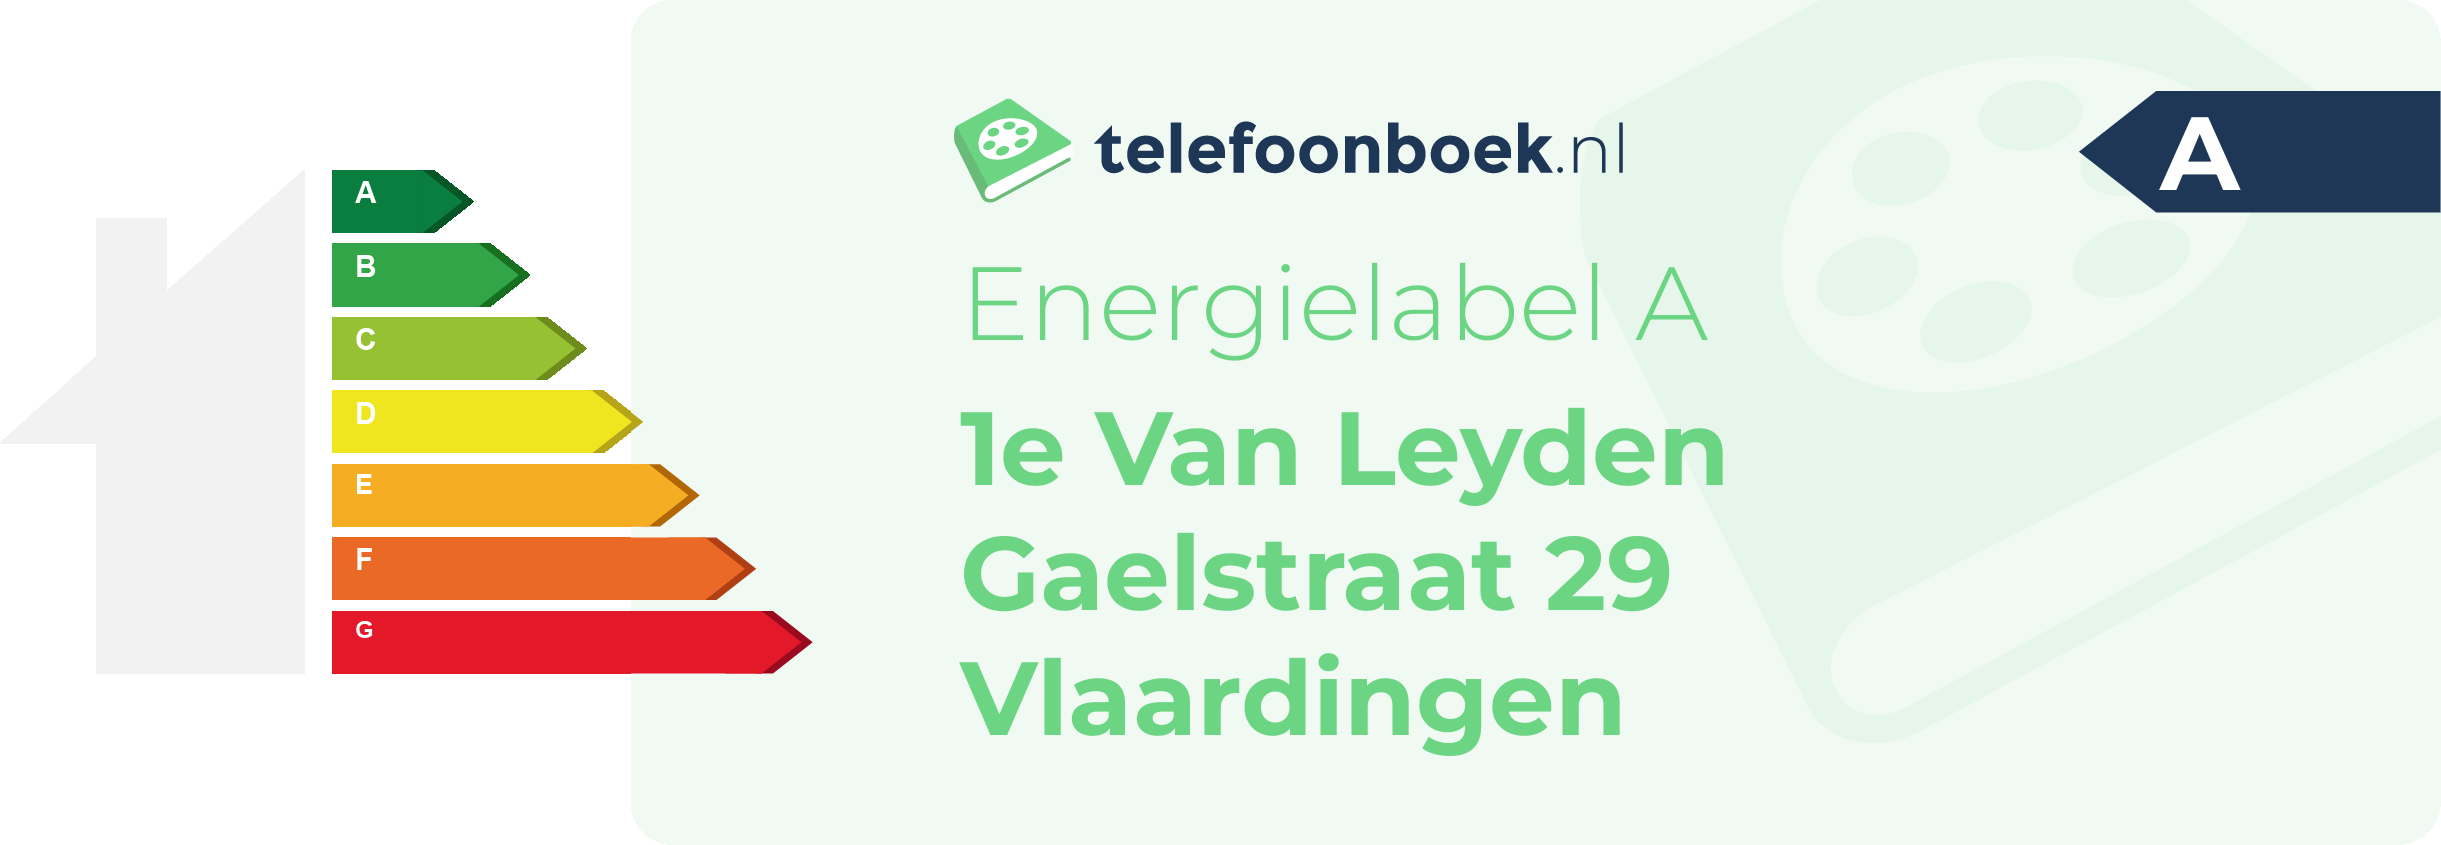 Energielabel 1e Van Leyden Gaelstraat 29 Vlaardingen